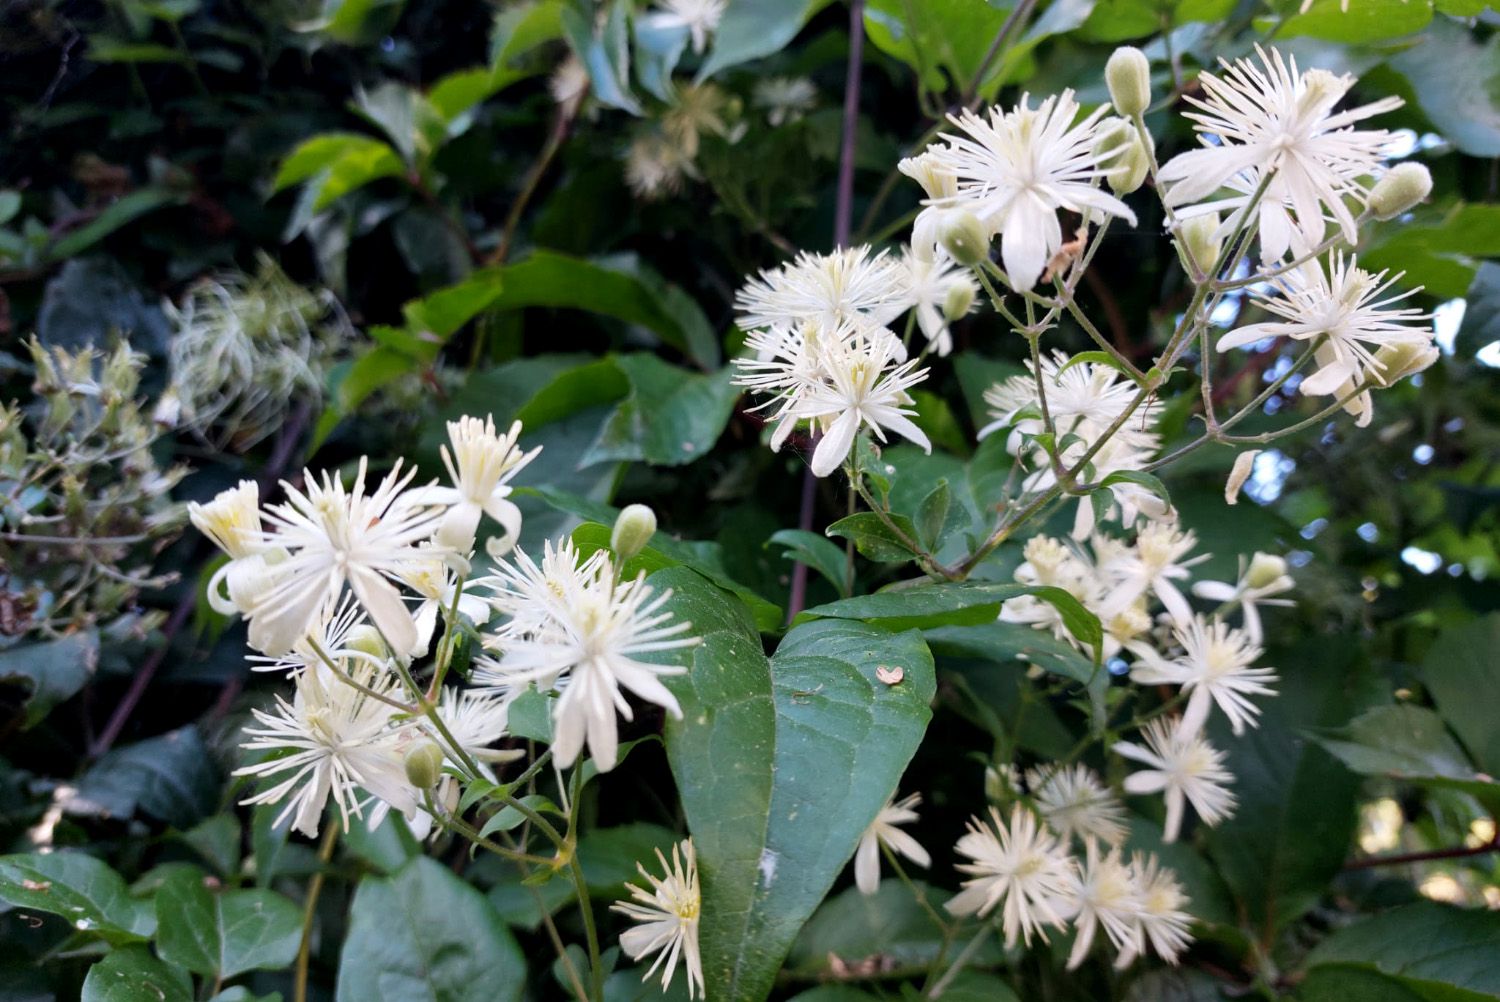 Kletterpflanze Waldrebe - Clematis Vitalba in Blüte